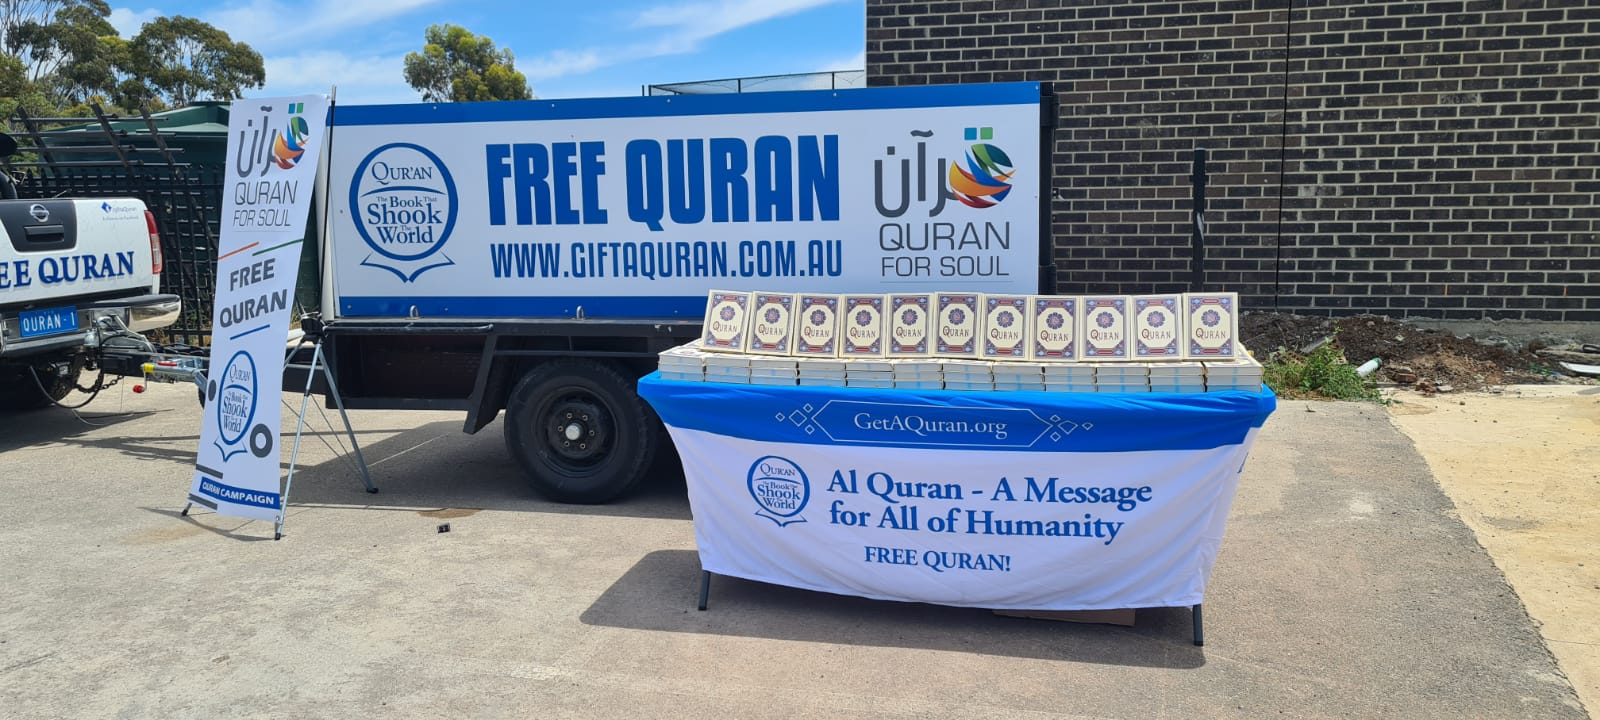 2021 : les objectifs de Quranforsoul sont atteints ! Quran Coran